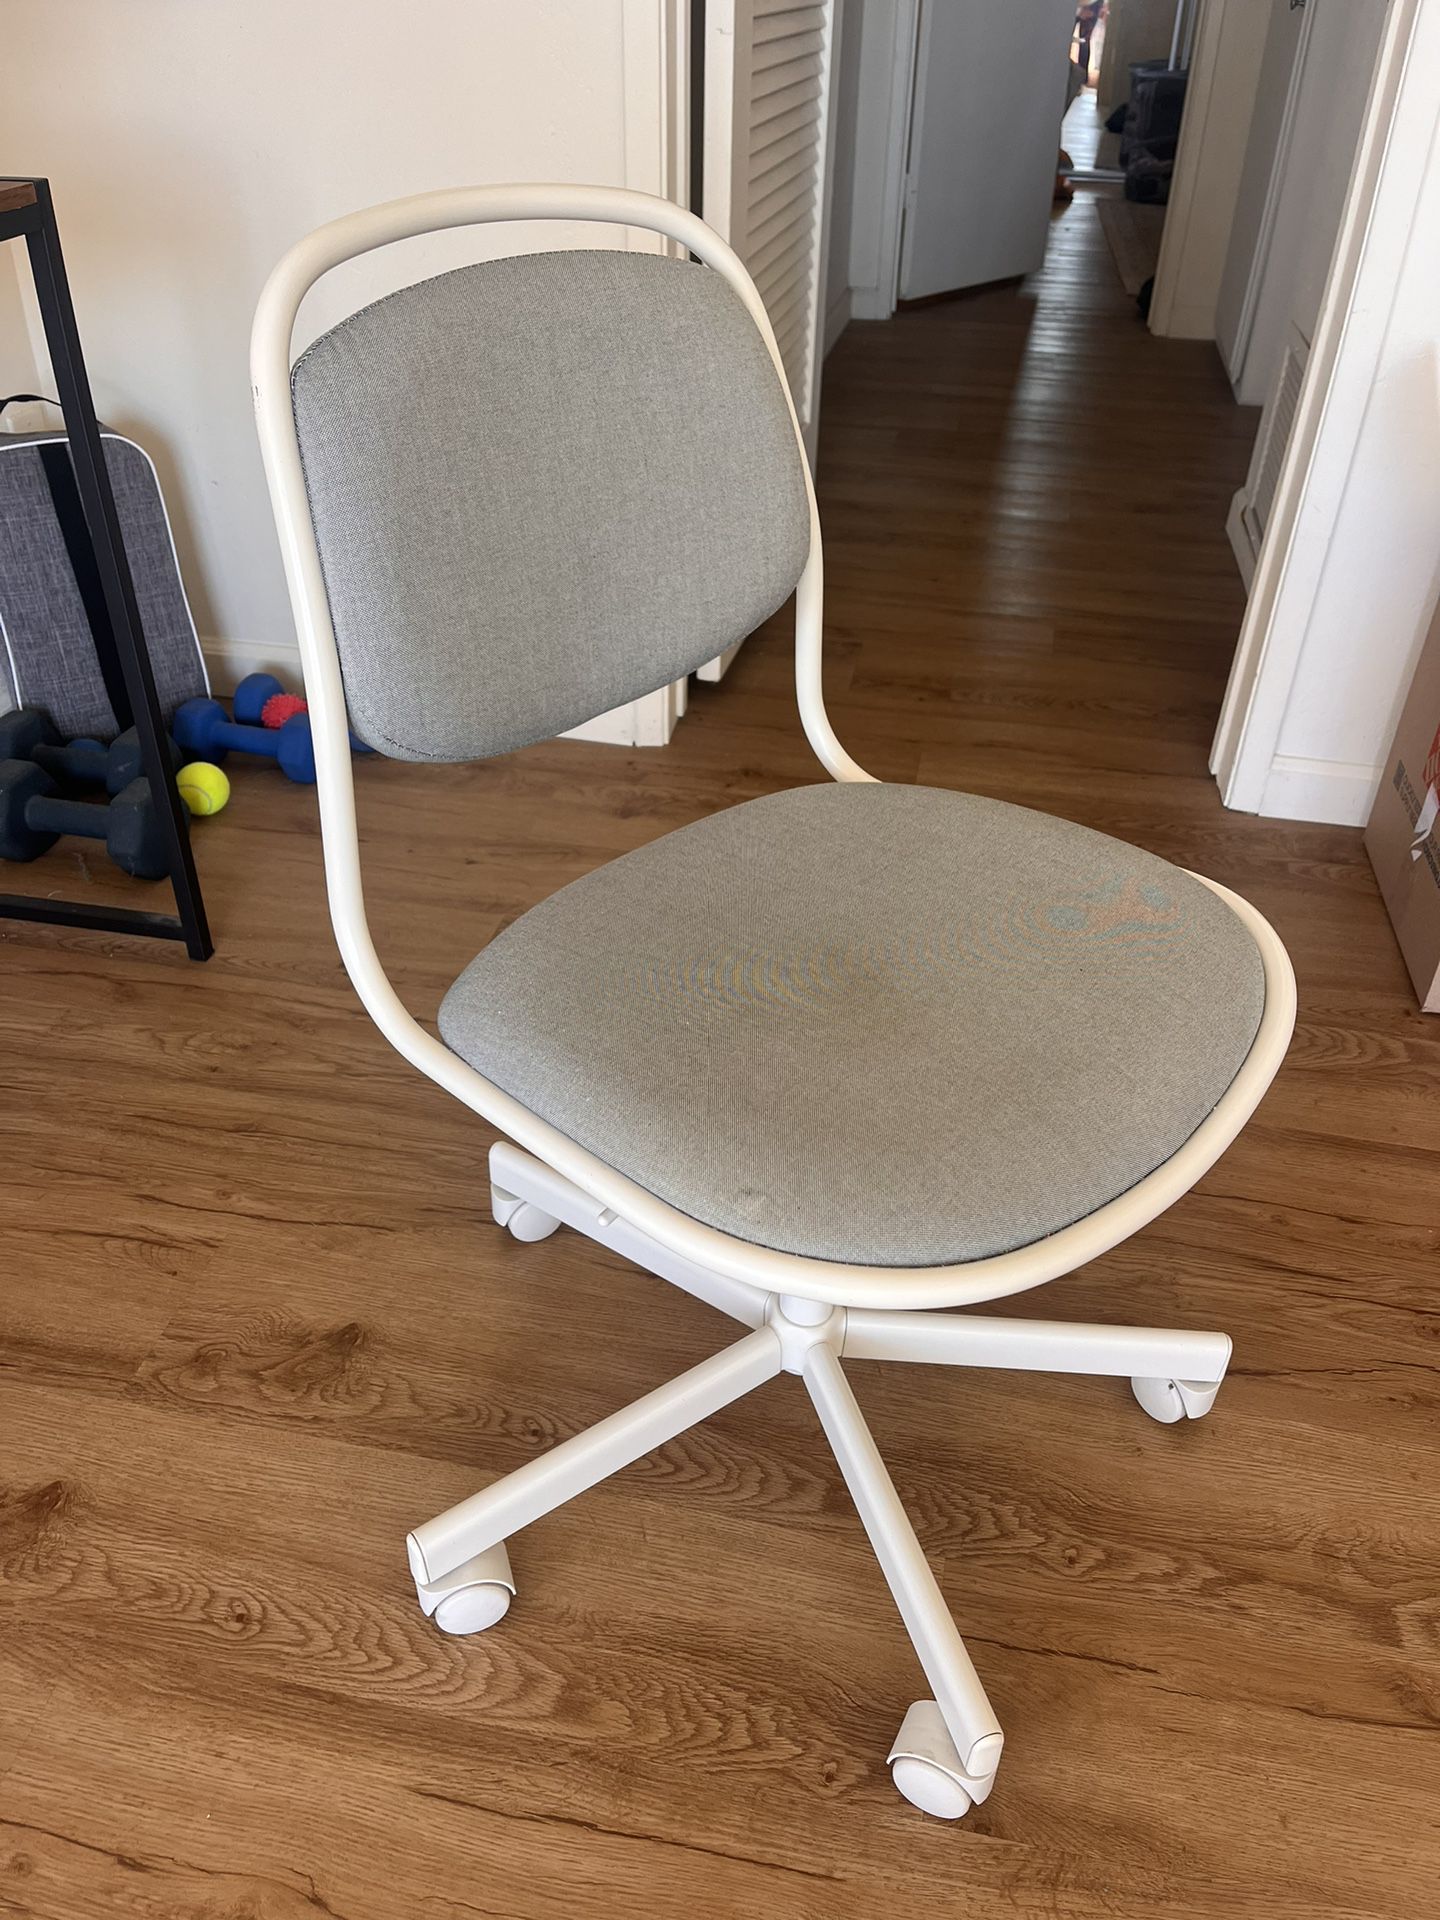 IKEA Desk Chair 